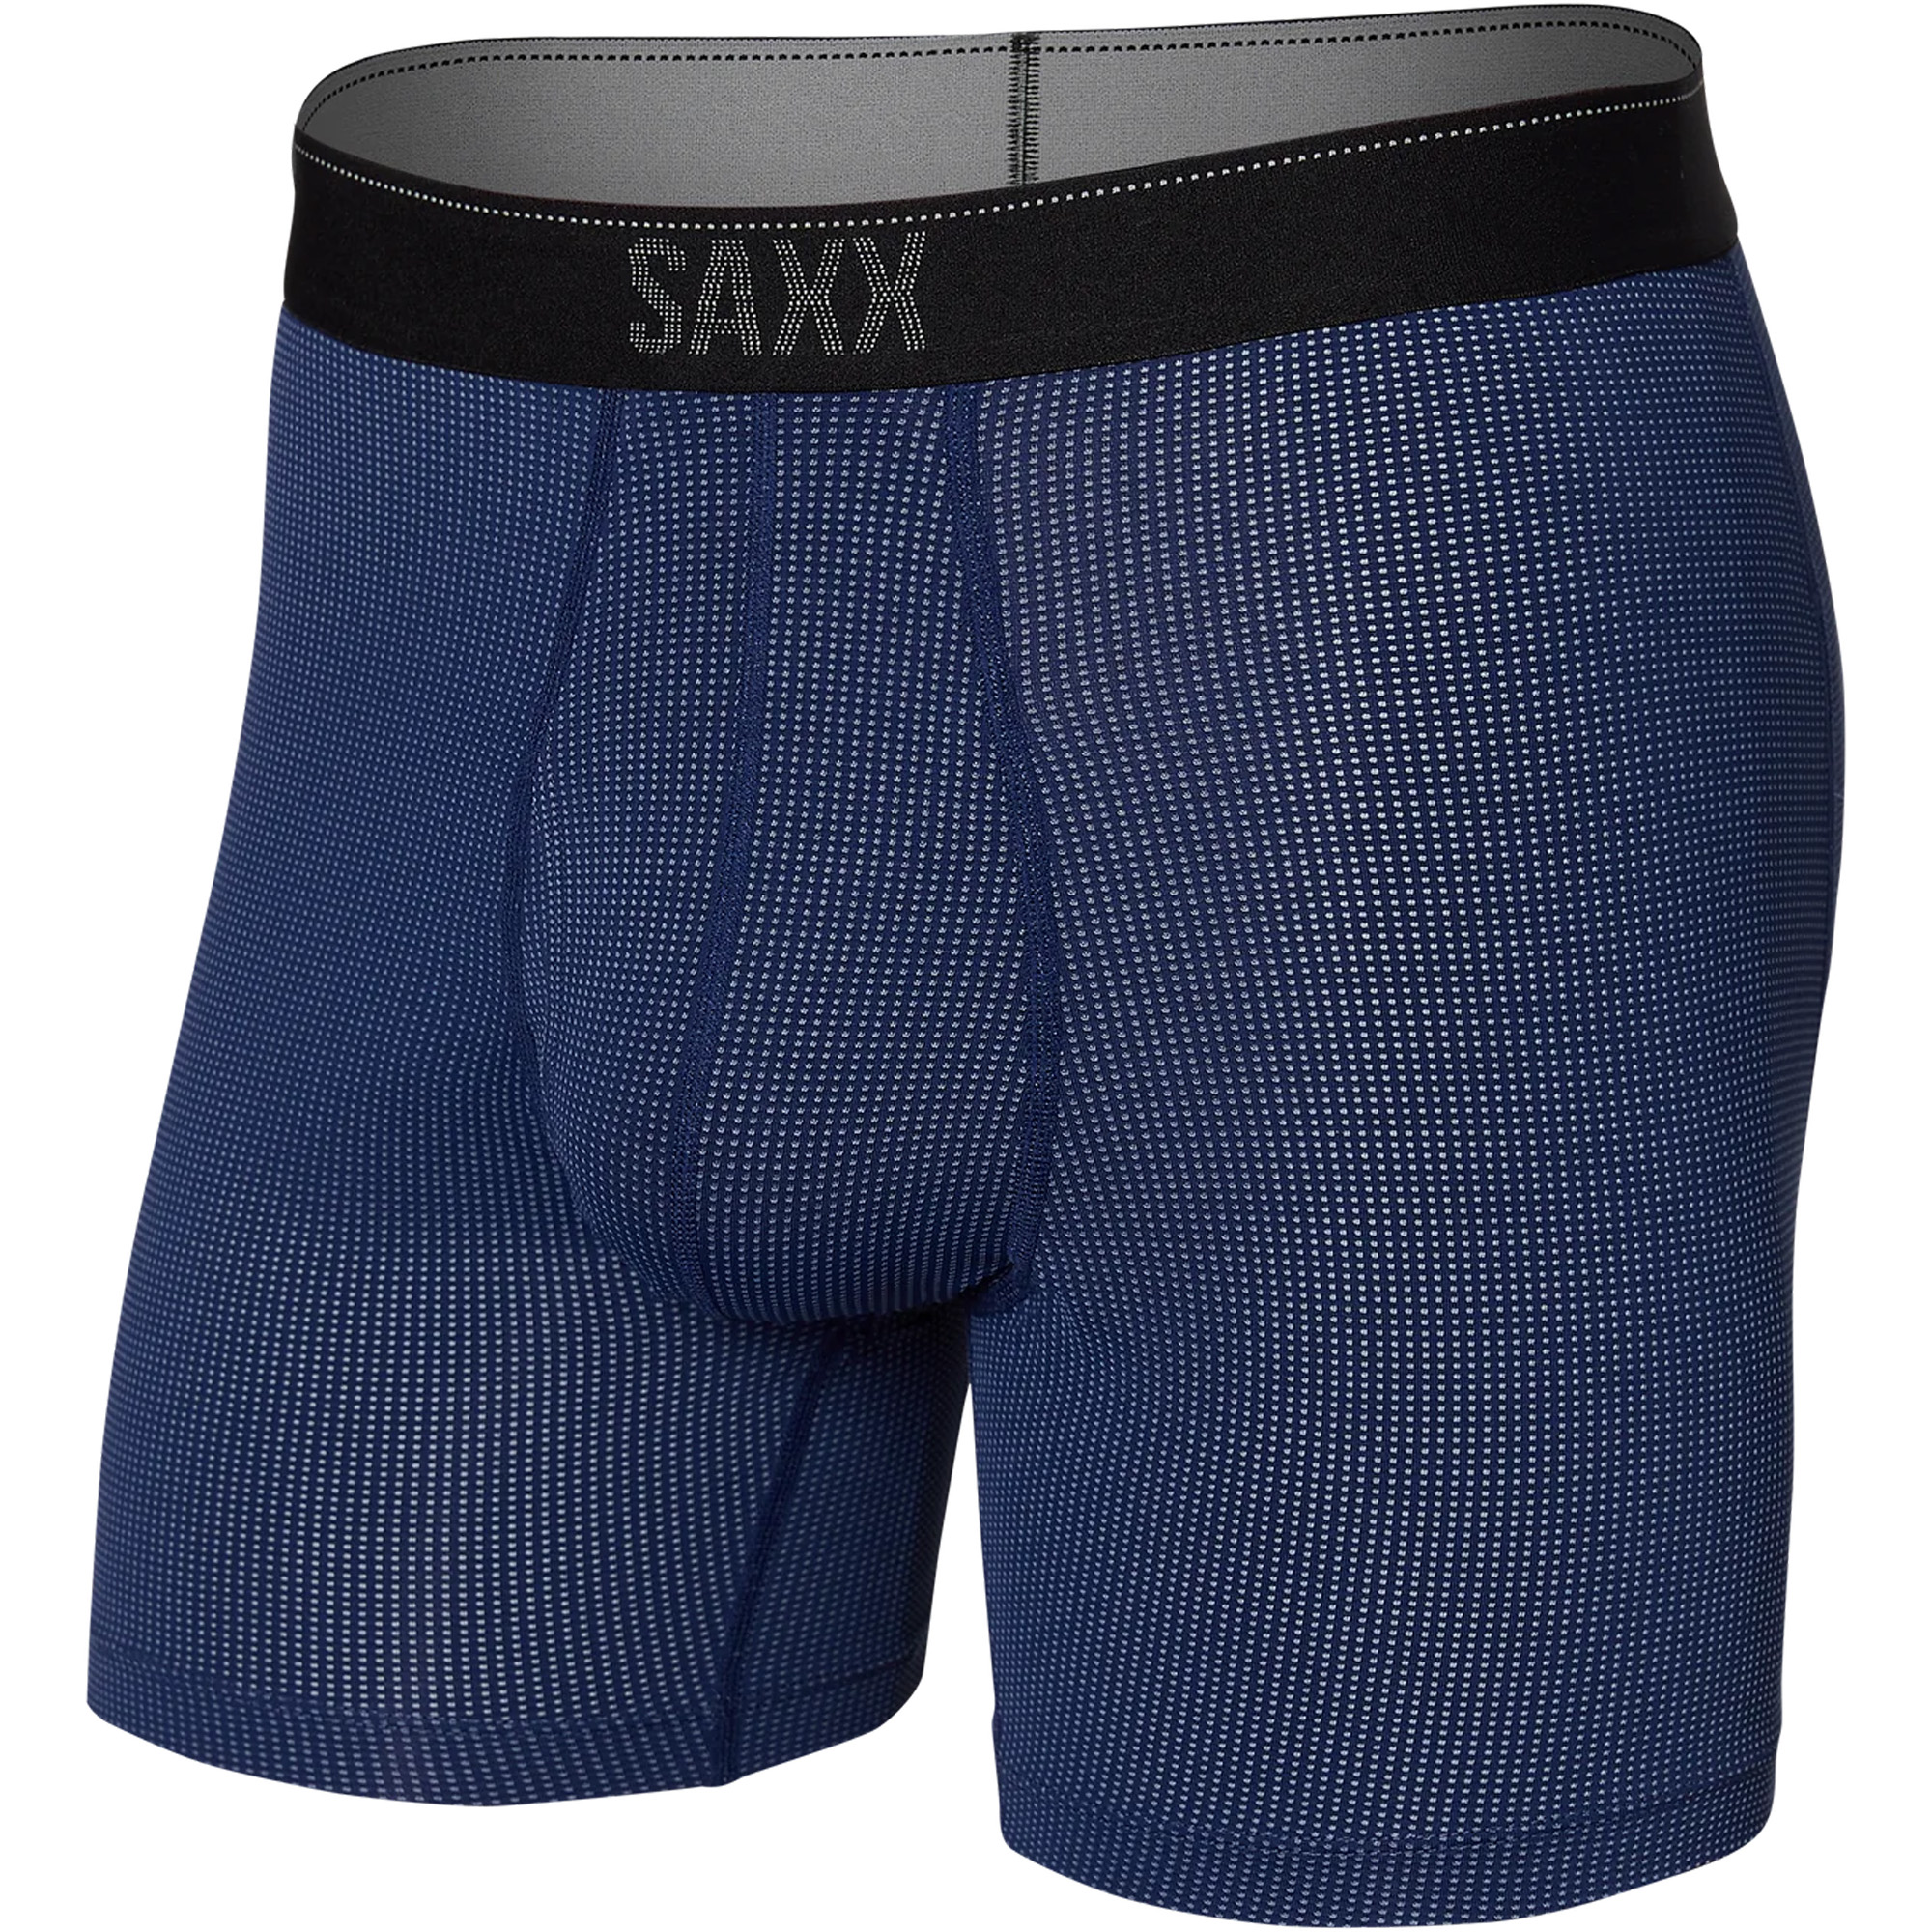 Saxx Quest Boxer Brief Men's Underwear